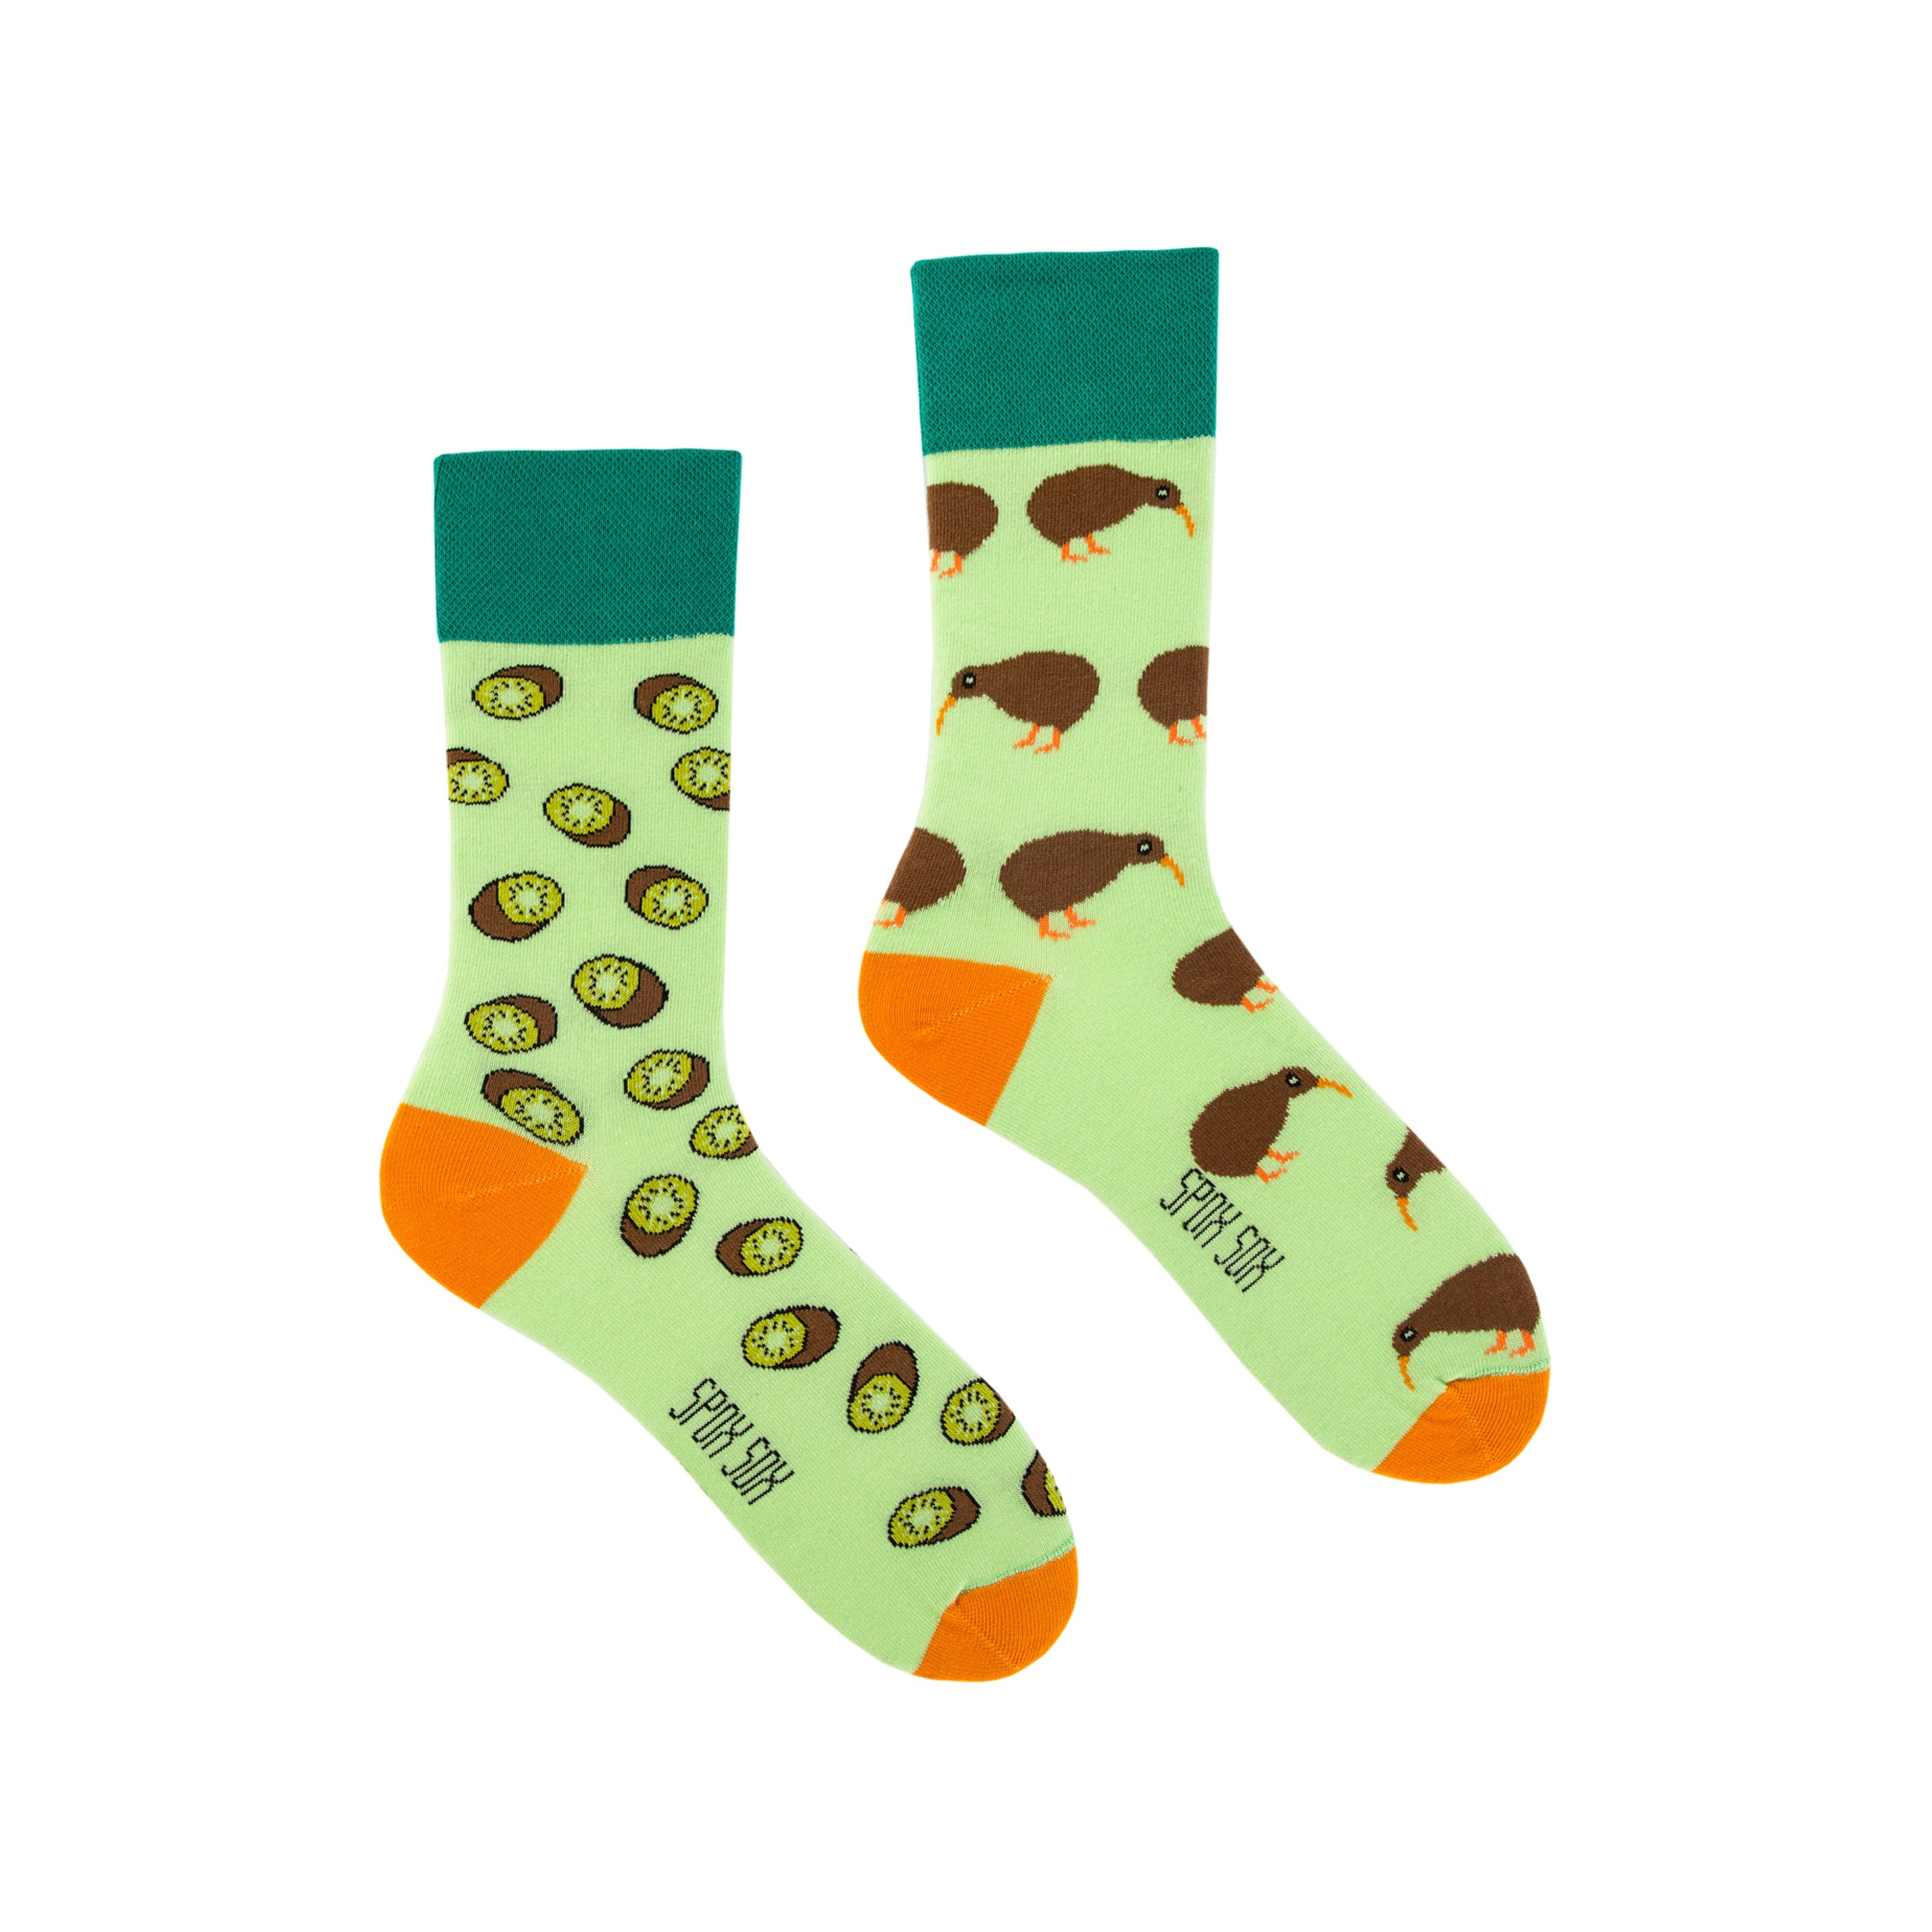 Kiwi Socks Men Socks Colorful Socks Cool Socks - Etsy UK